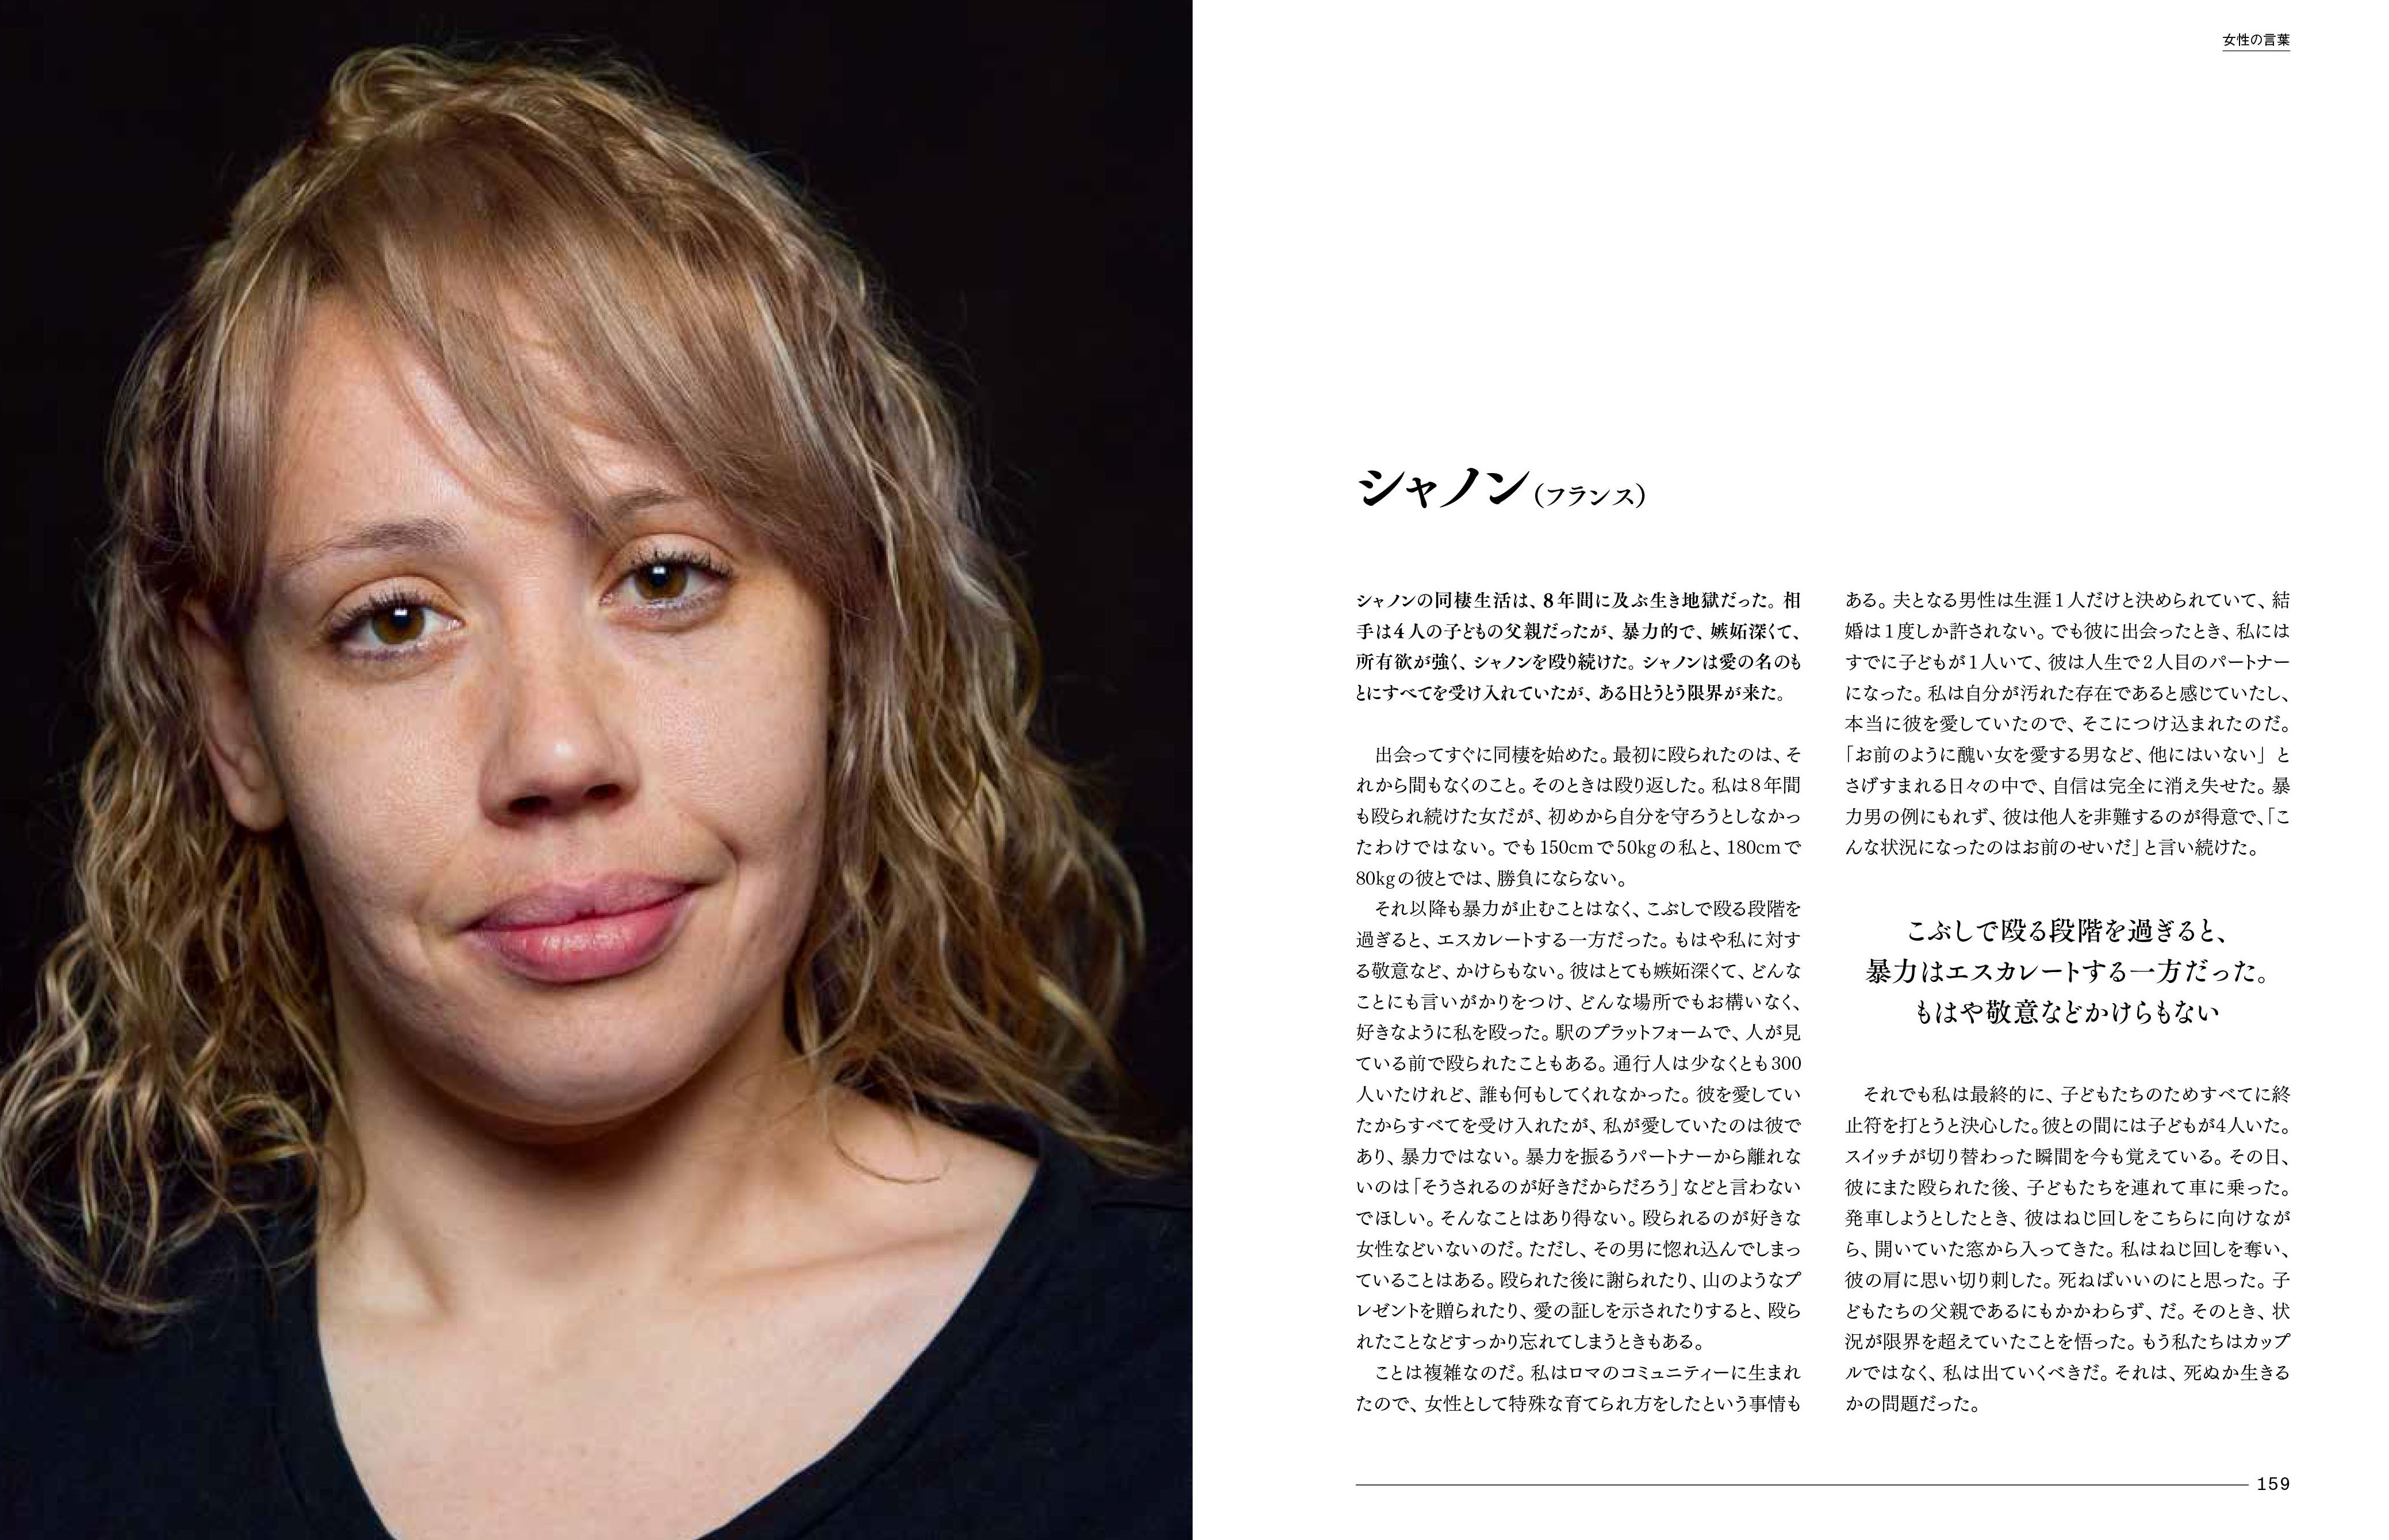 話すことを選んだ女性たち60人の社会 性 家 自立 暴力 3月7日 月 発売 日経ナショナル ジオグラフィック社のプレスリリース